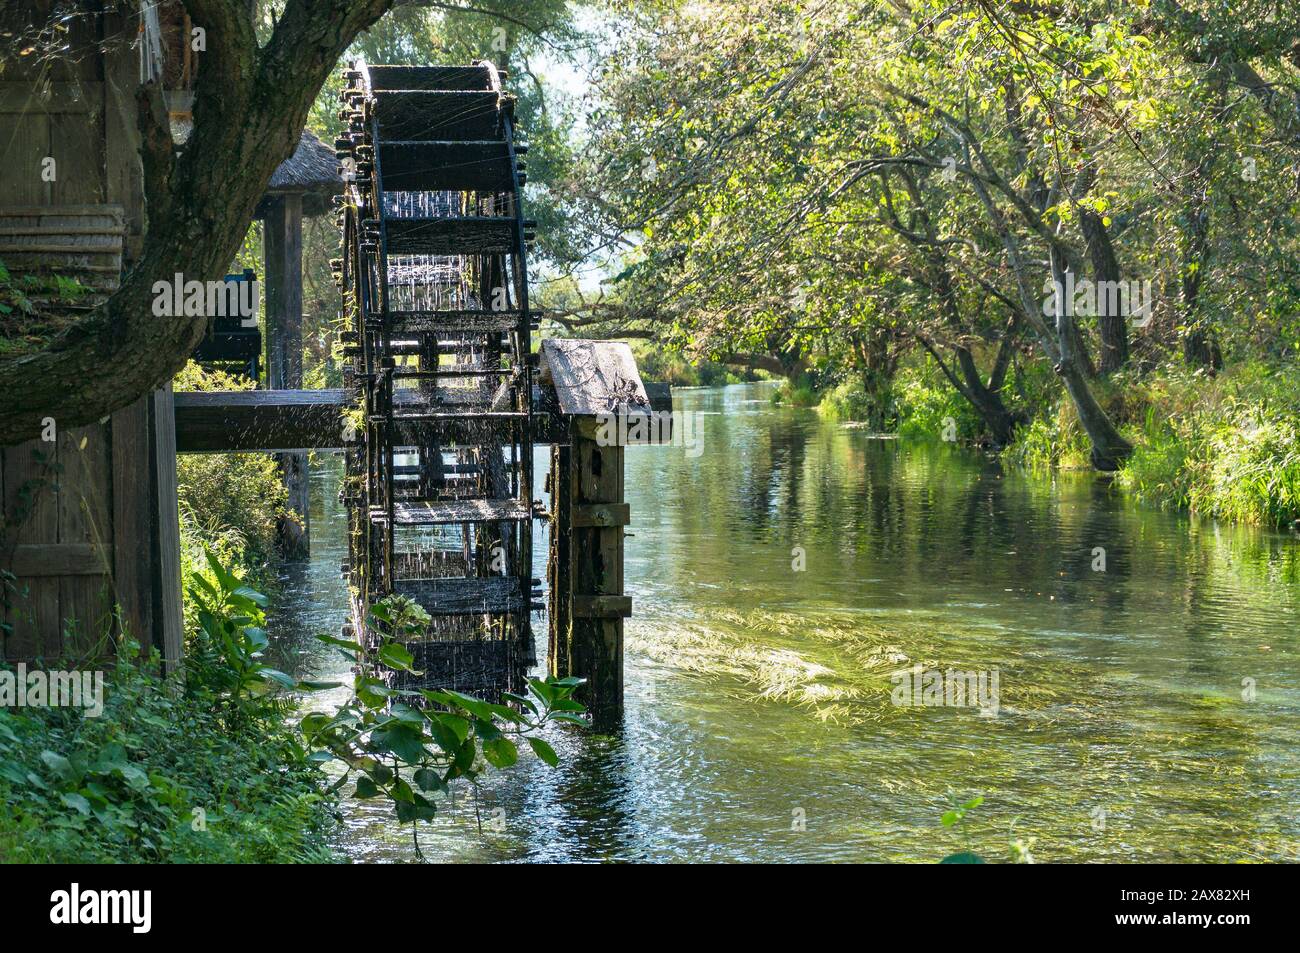 Moulin à eau sur la rivière avec des arbres verts sur le fond. Machines agricoles traditionnelles durables utilisant l'énergie hydraulique et les énergies renouvelables Banque D'Images